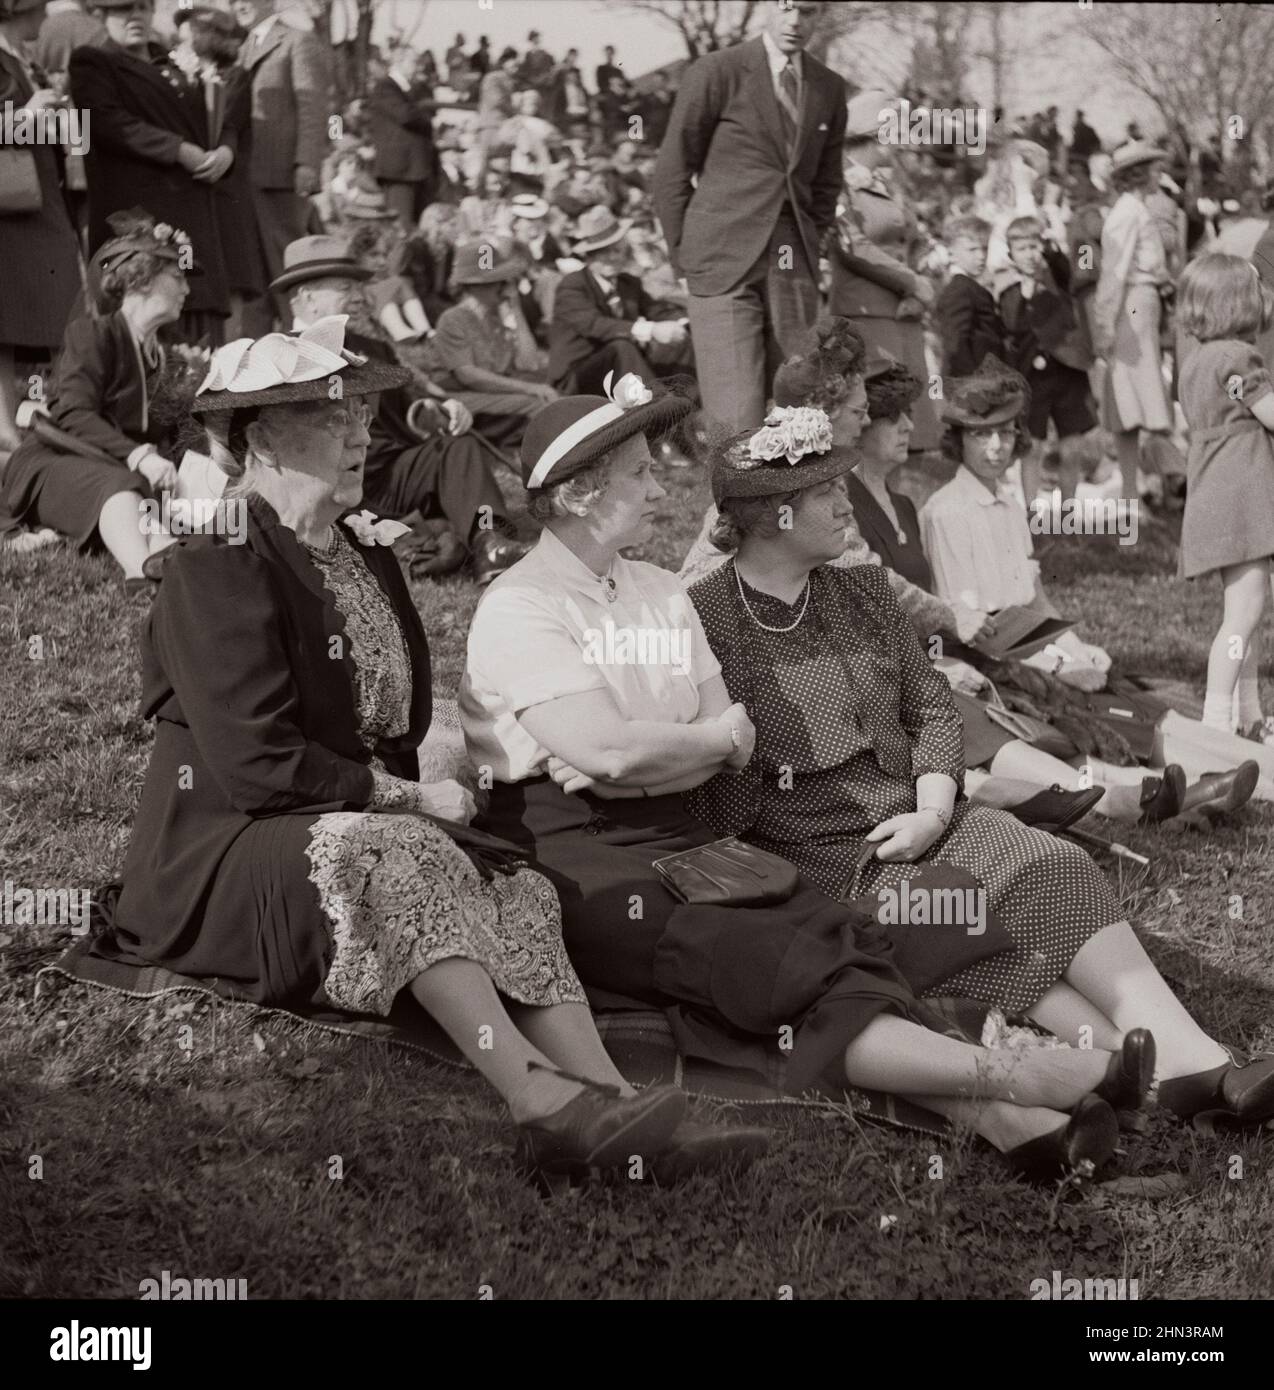 Foto vintage de la vida americana en 1940s. Espectadores en la carrera de la Copa punto a punto del Maryland Hunt Club. Worthington Valley, cerca de Glyndon, Maryla Foto de stock